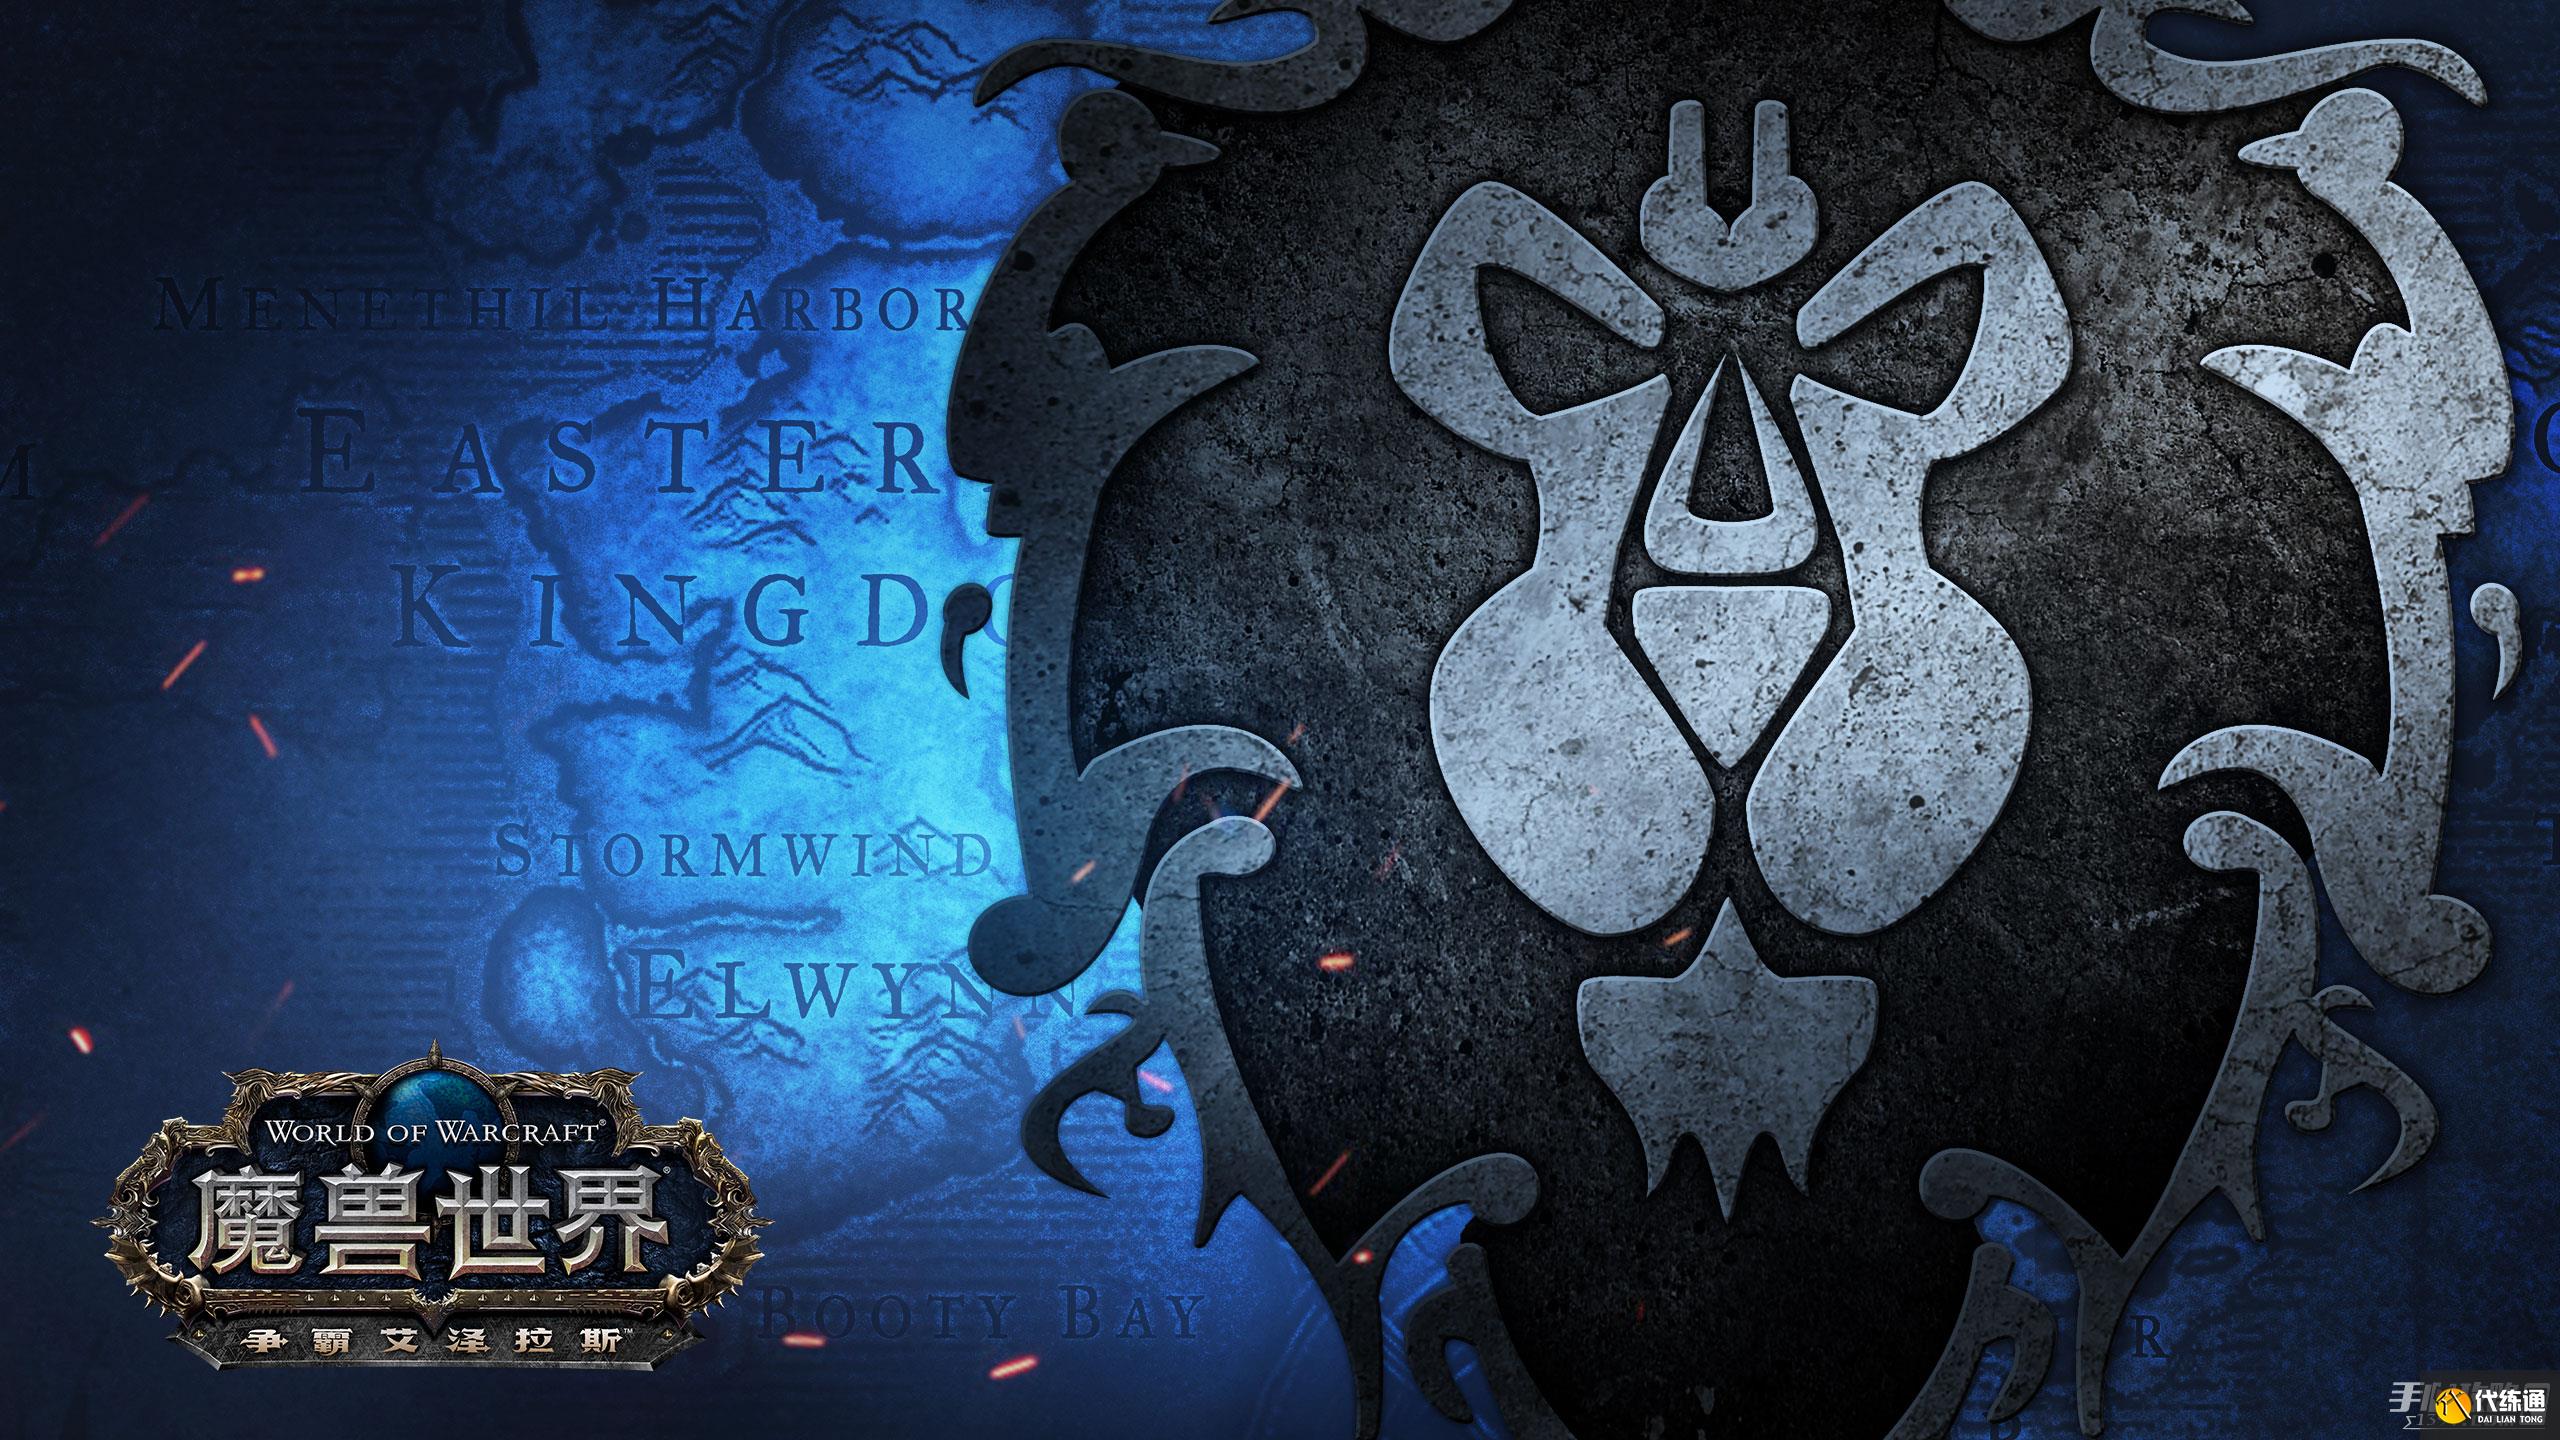 World Of Warcraft HD Wallpaper | Hintergrund | 1920x1080 | ID:1040149 ...